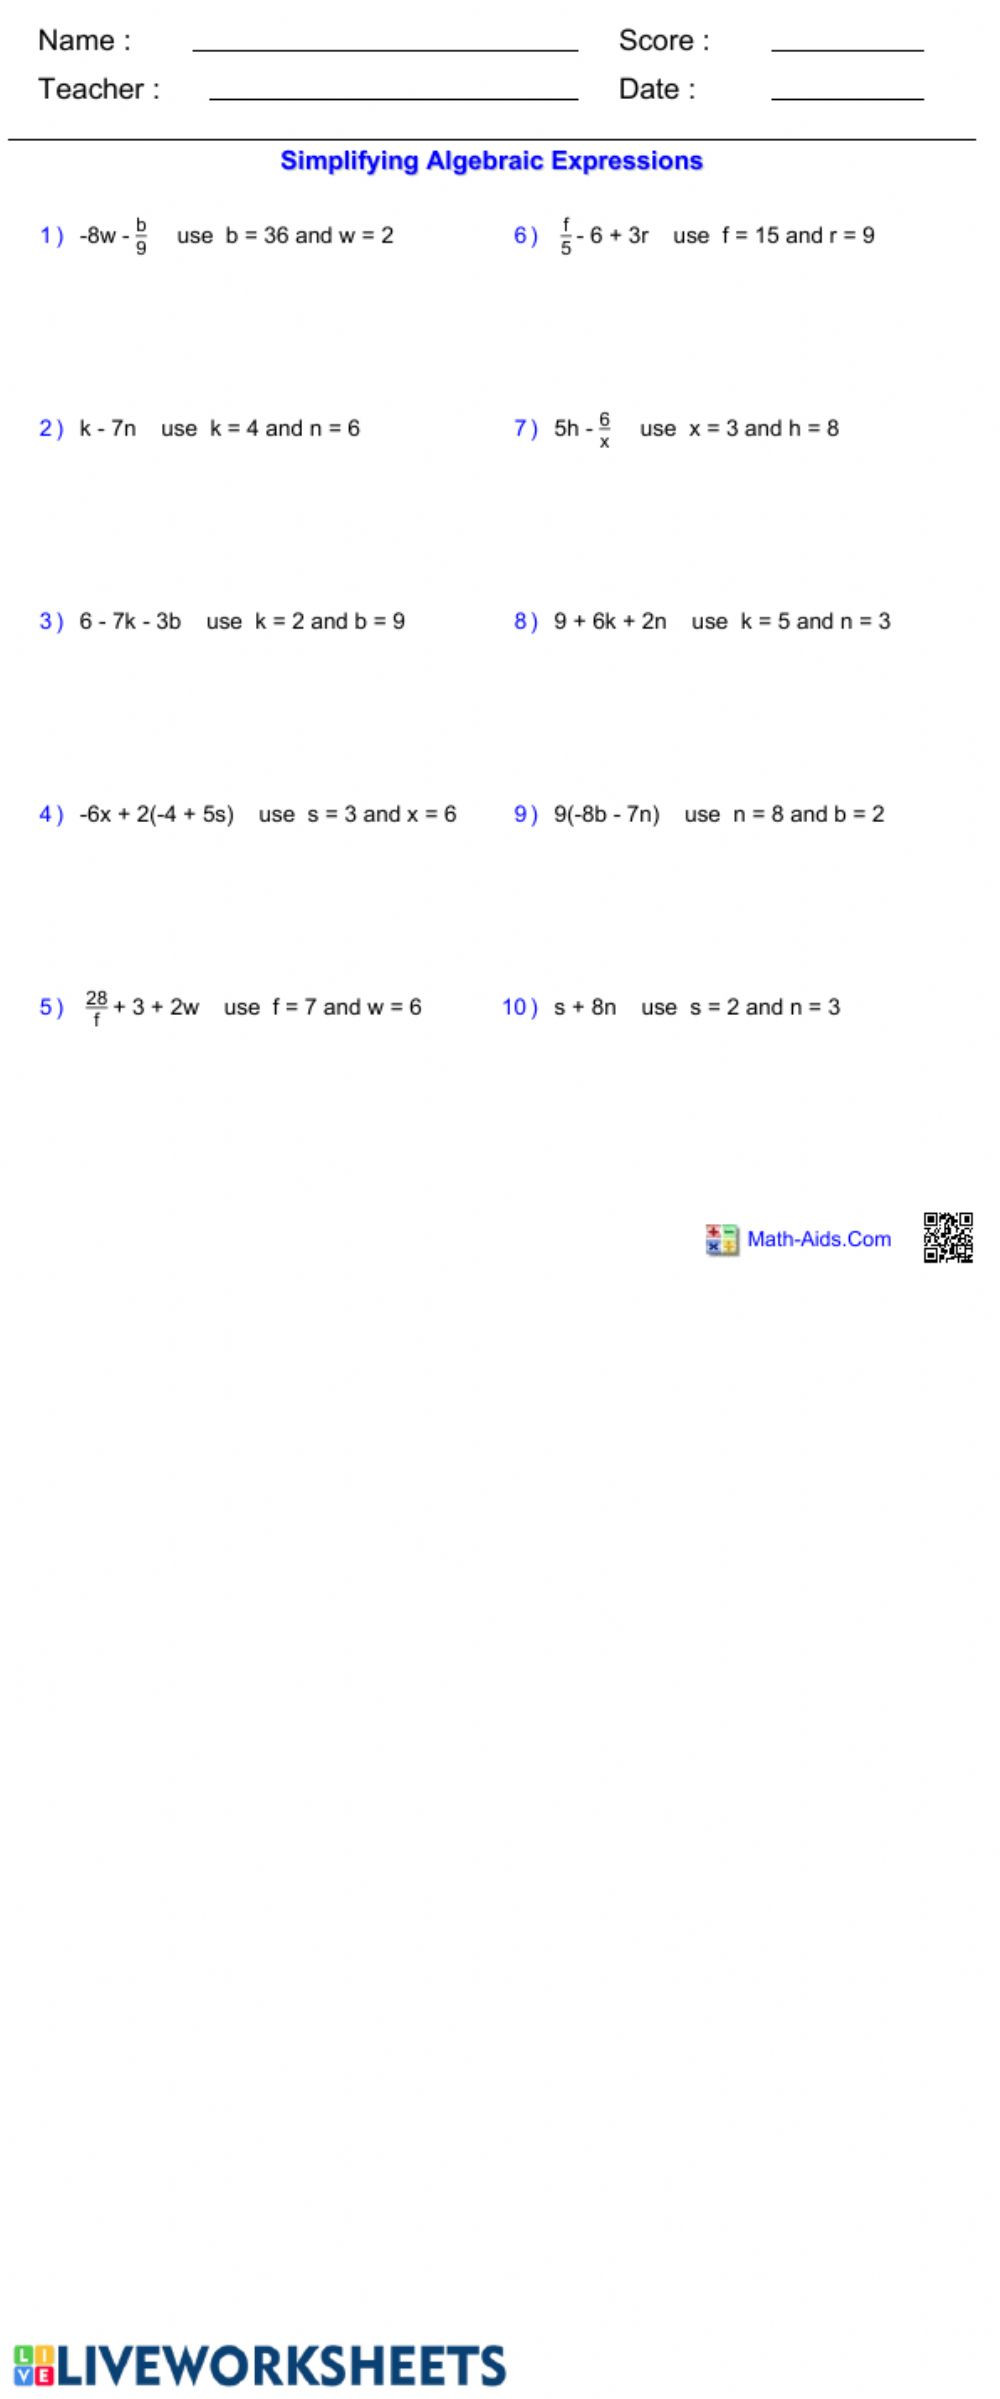 Simplifying Algebraic Fractions Worksheet Simplifying Algebraic Expressions Interactive Worksheet